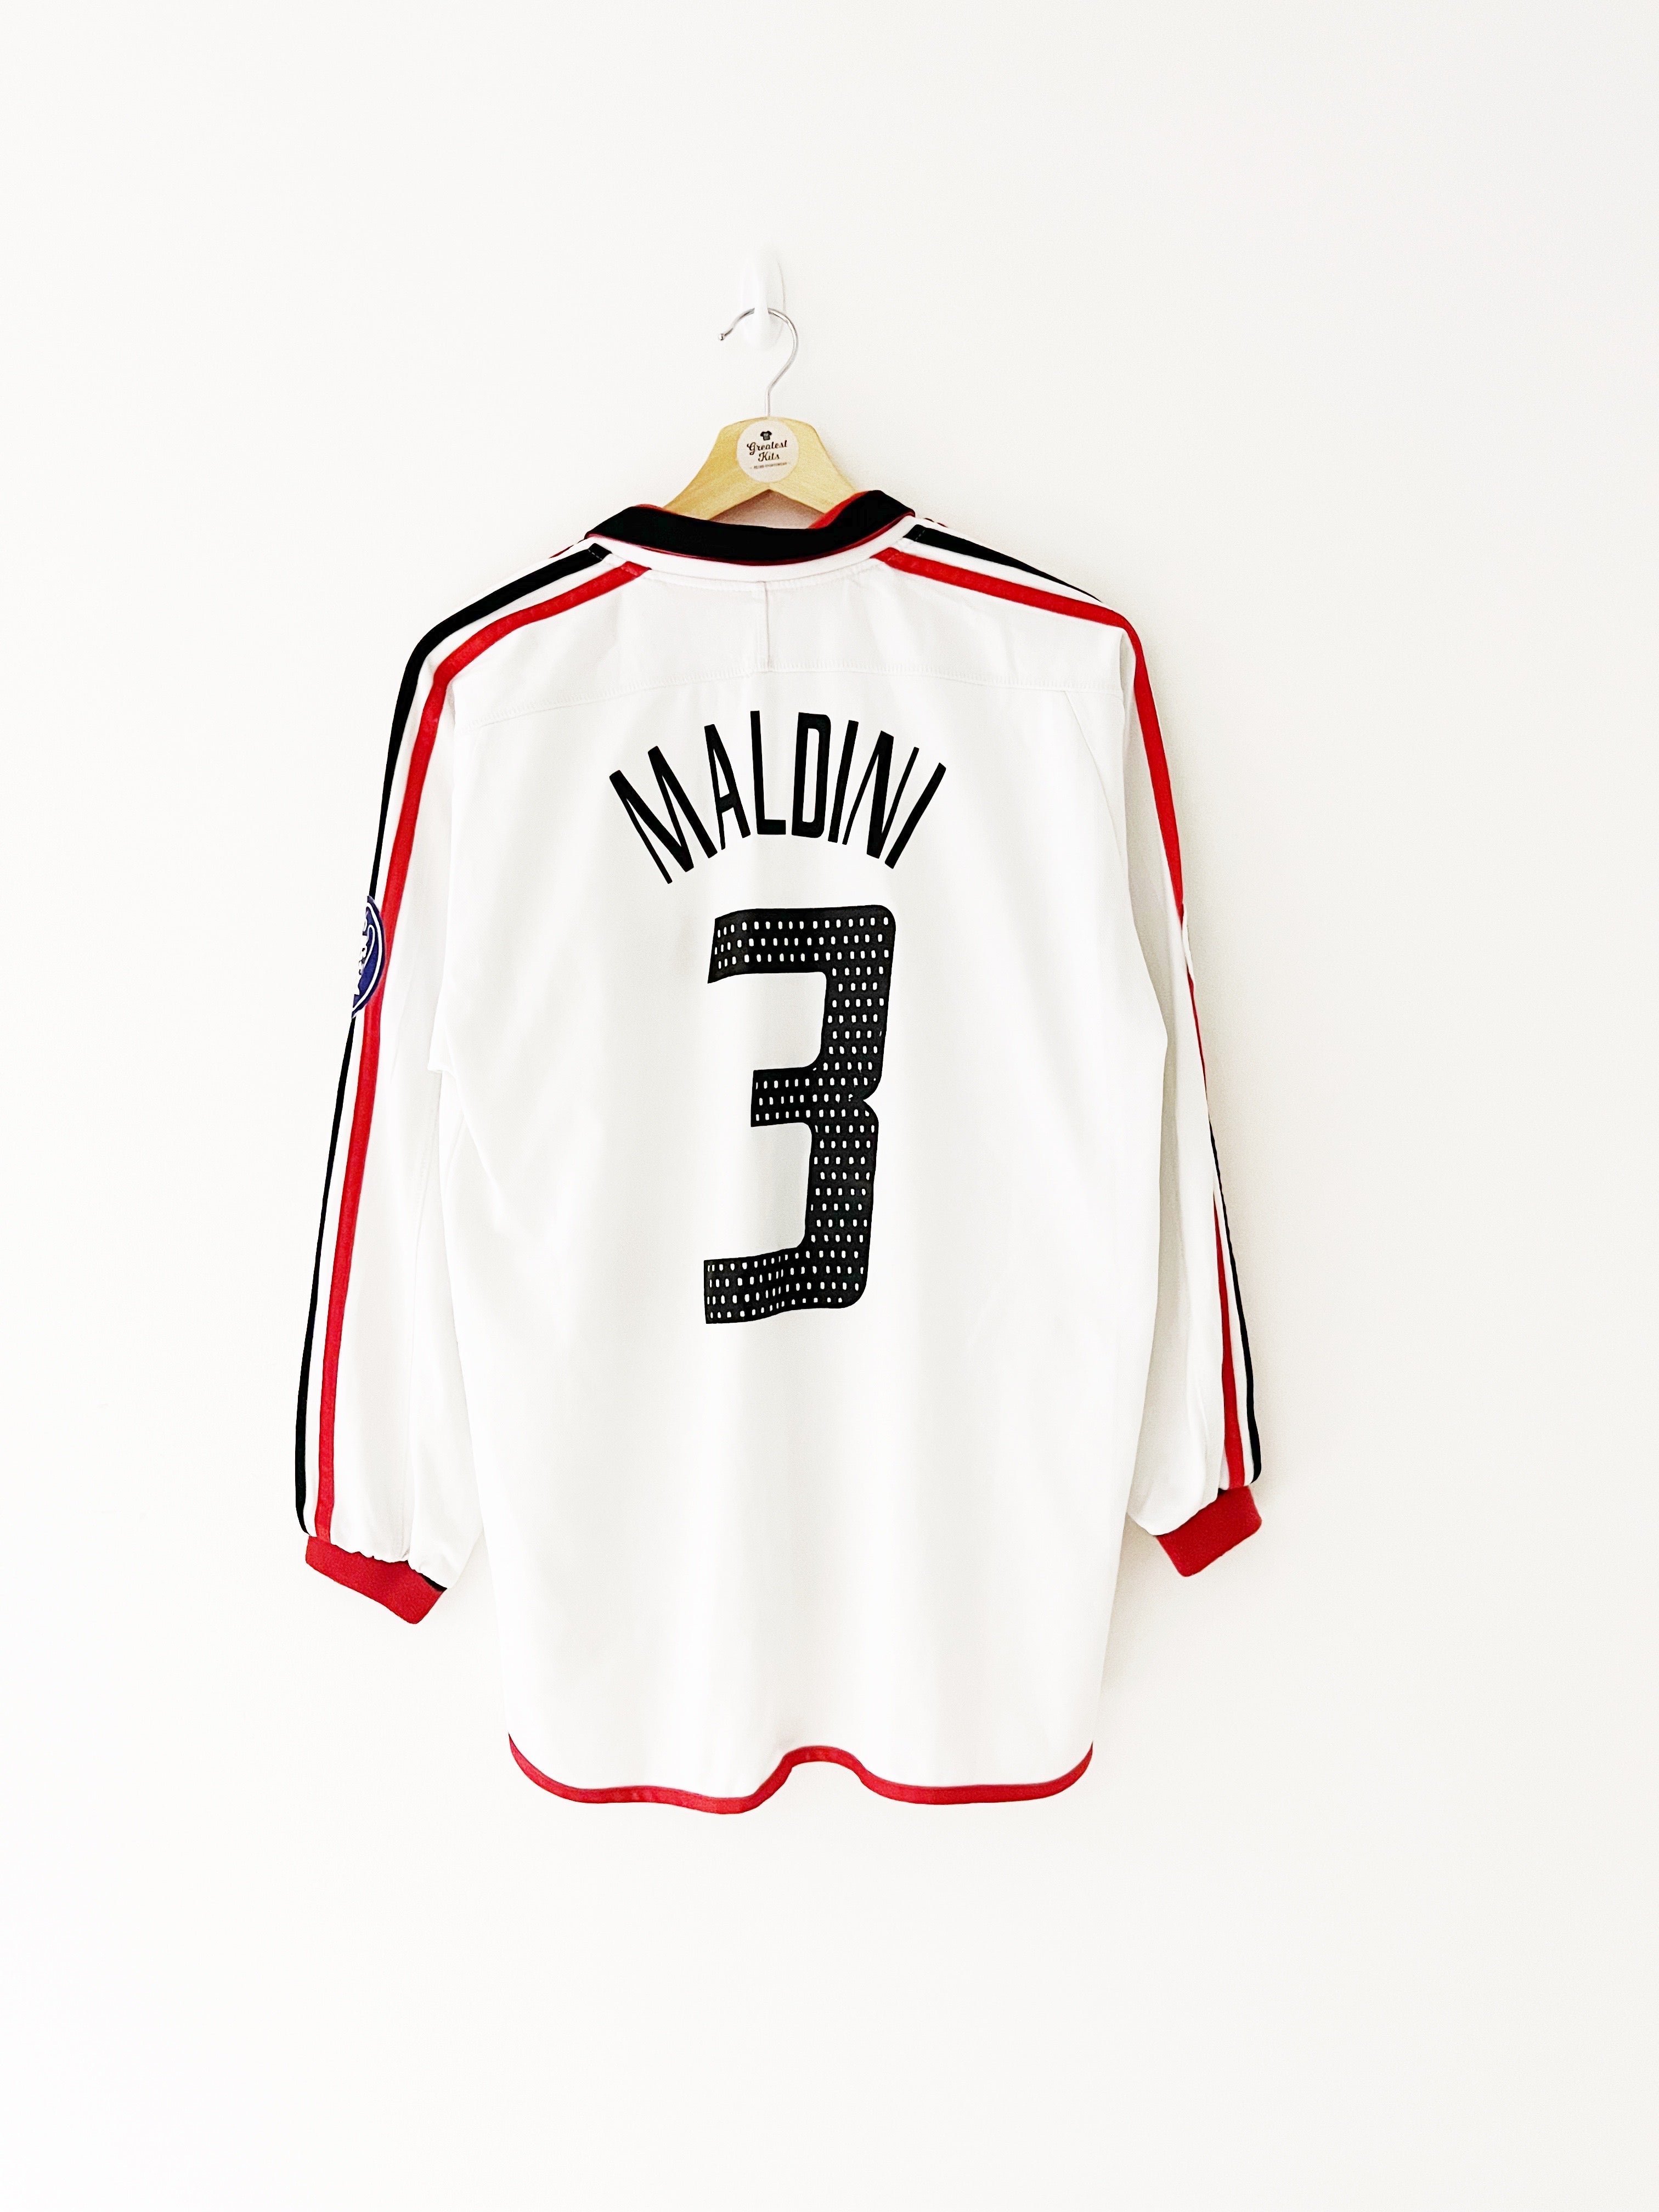 2003/04 AC Milan *Player Spec* Away L/S Shirt Maldini #3 (XL) 8.5/10